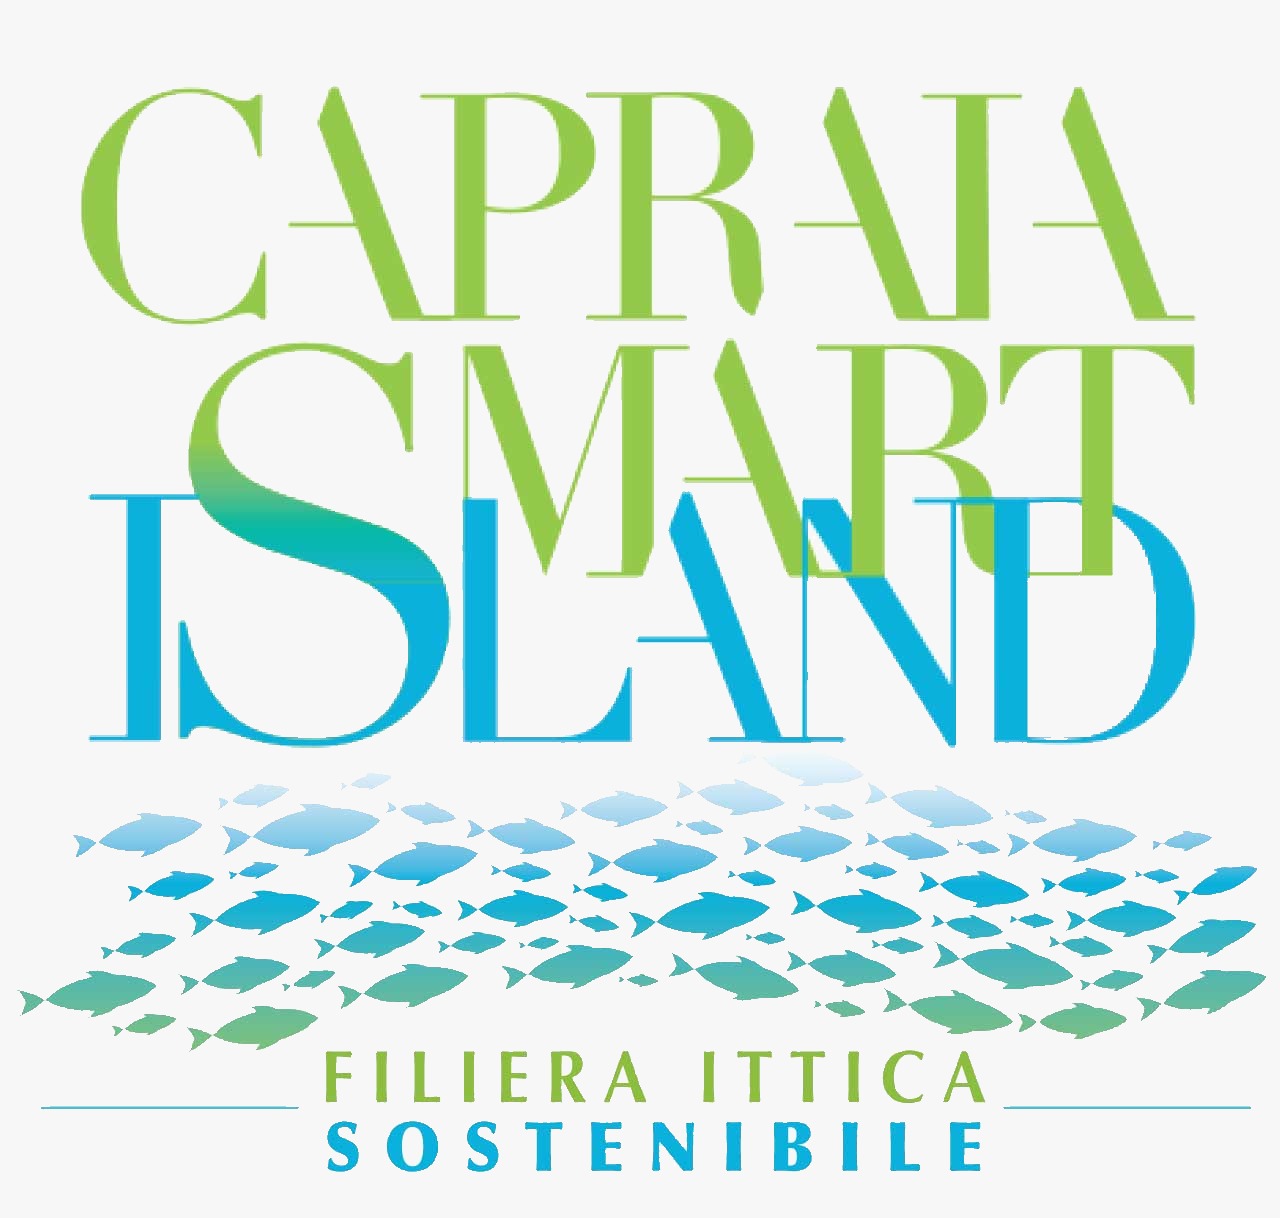 CAPRAIA SMART ISLAND - filiera ittica sostenibile